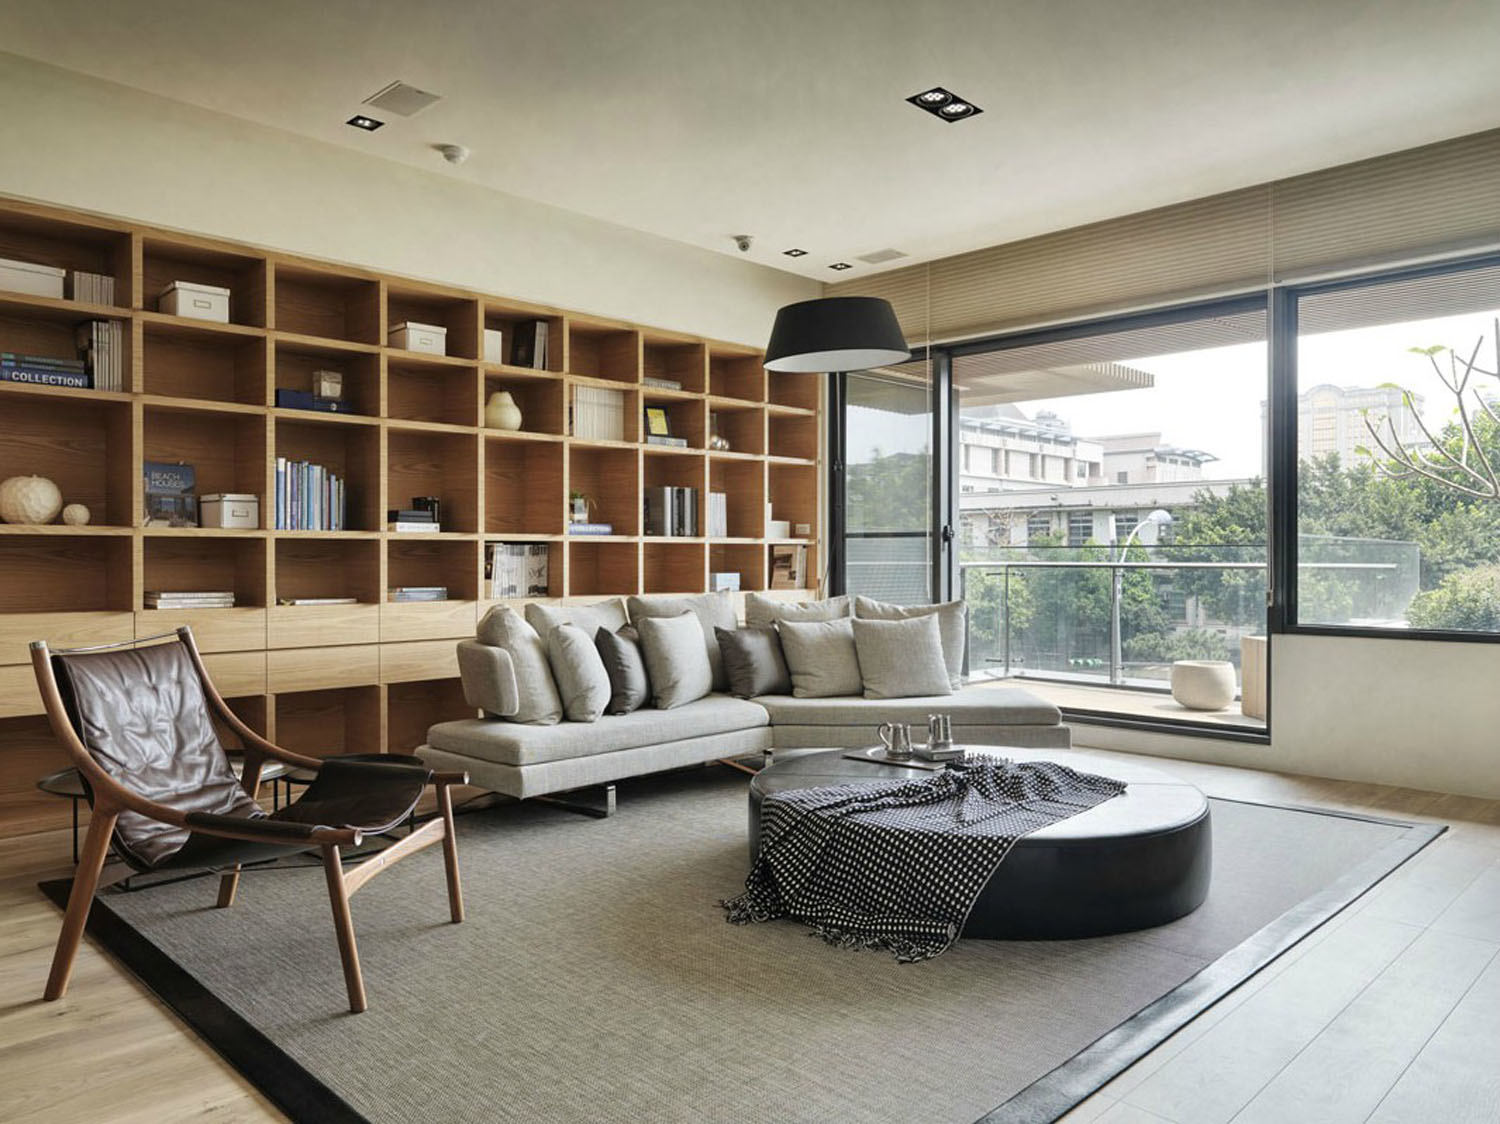 日式设计风格直接受日本和式建筑影响，讲究空间的流动与分隔，流动则为一室，分隔则分几个功能空间，空间中总能让人静静地思考。